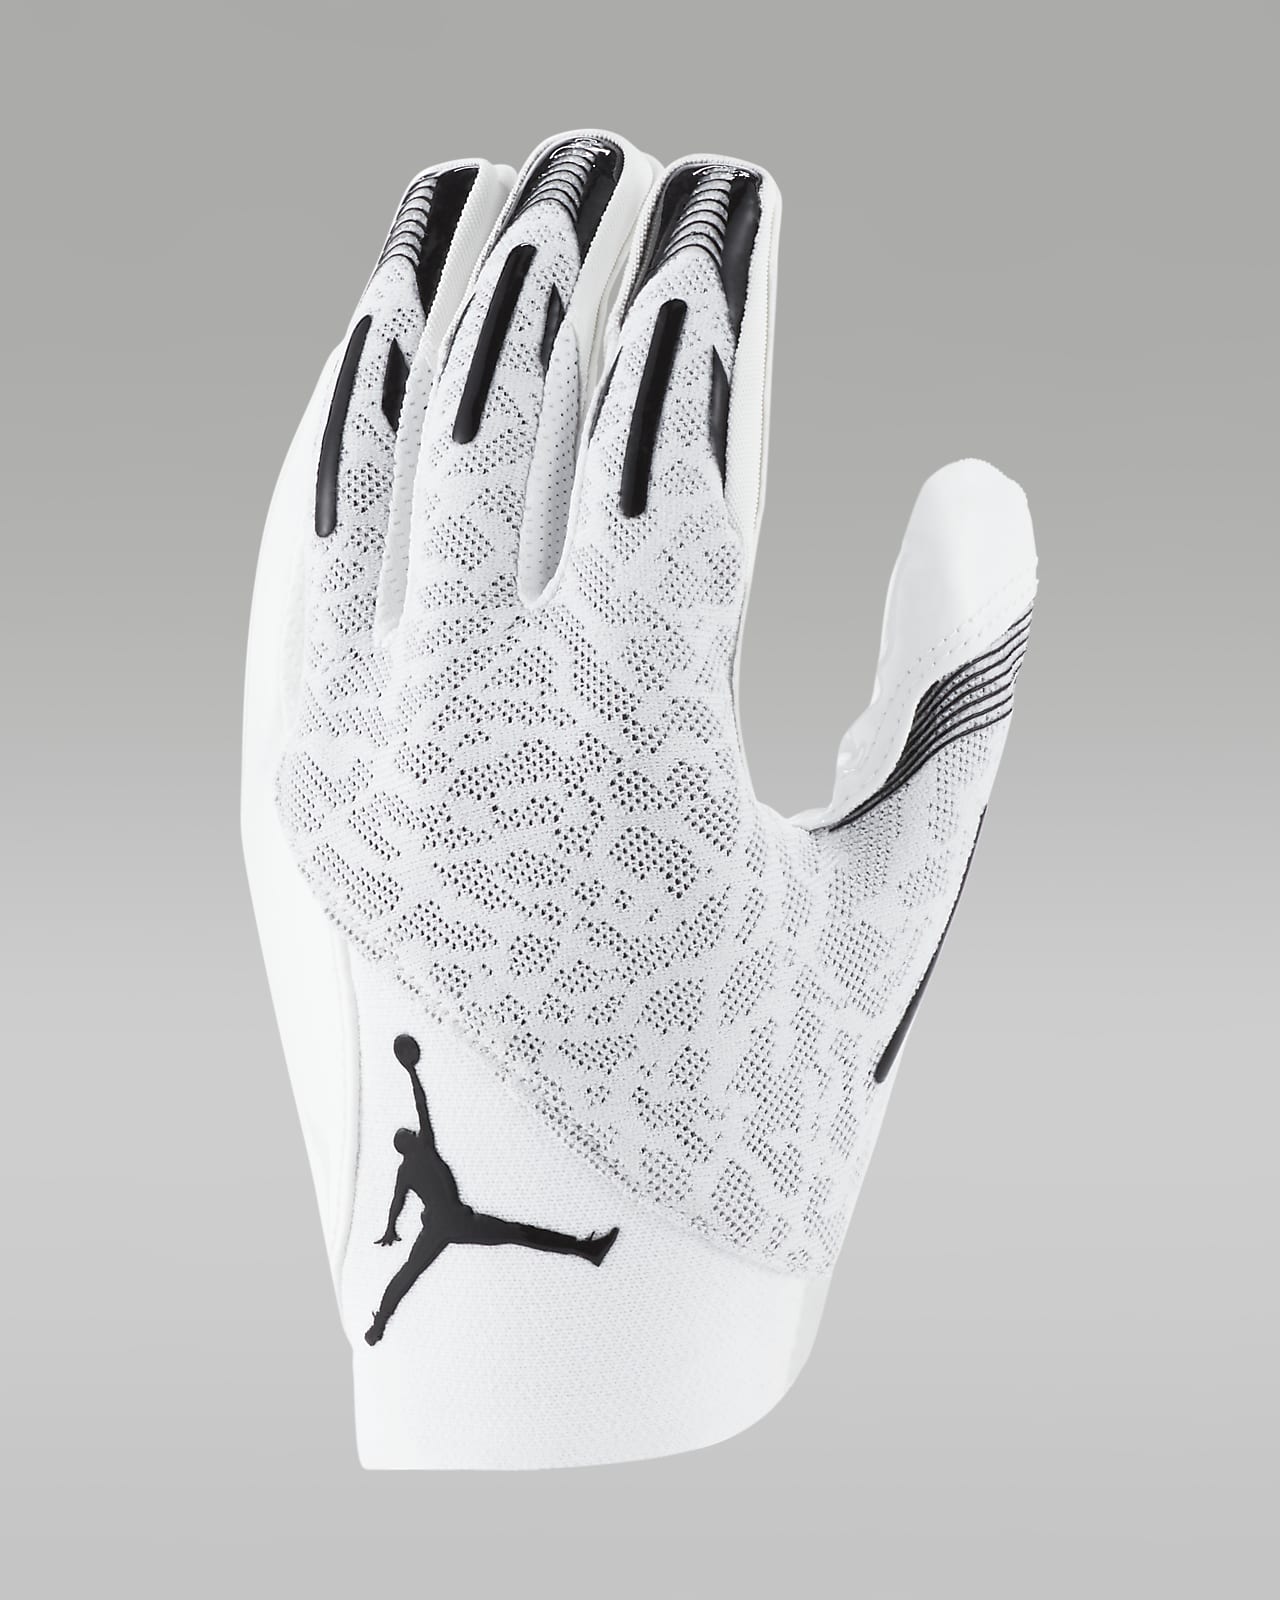 Jordan Knit Football Gloves.